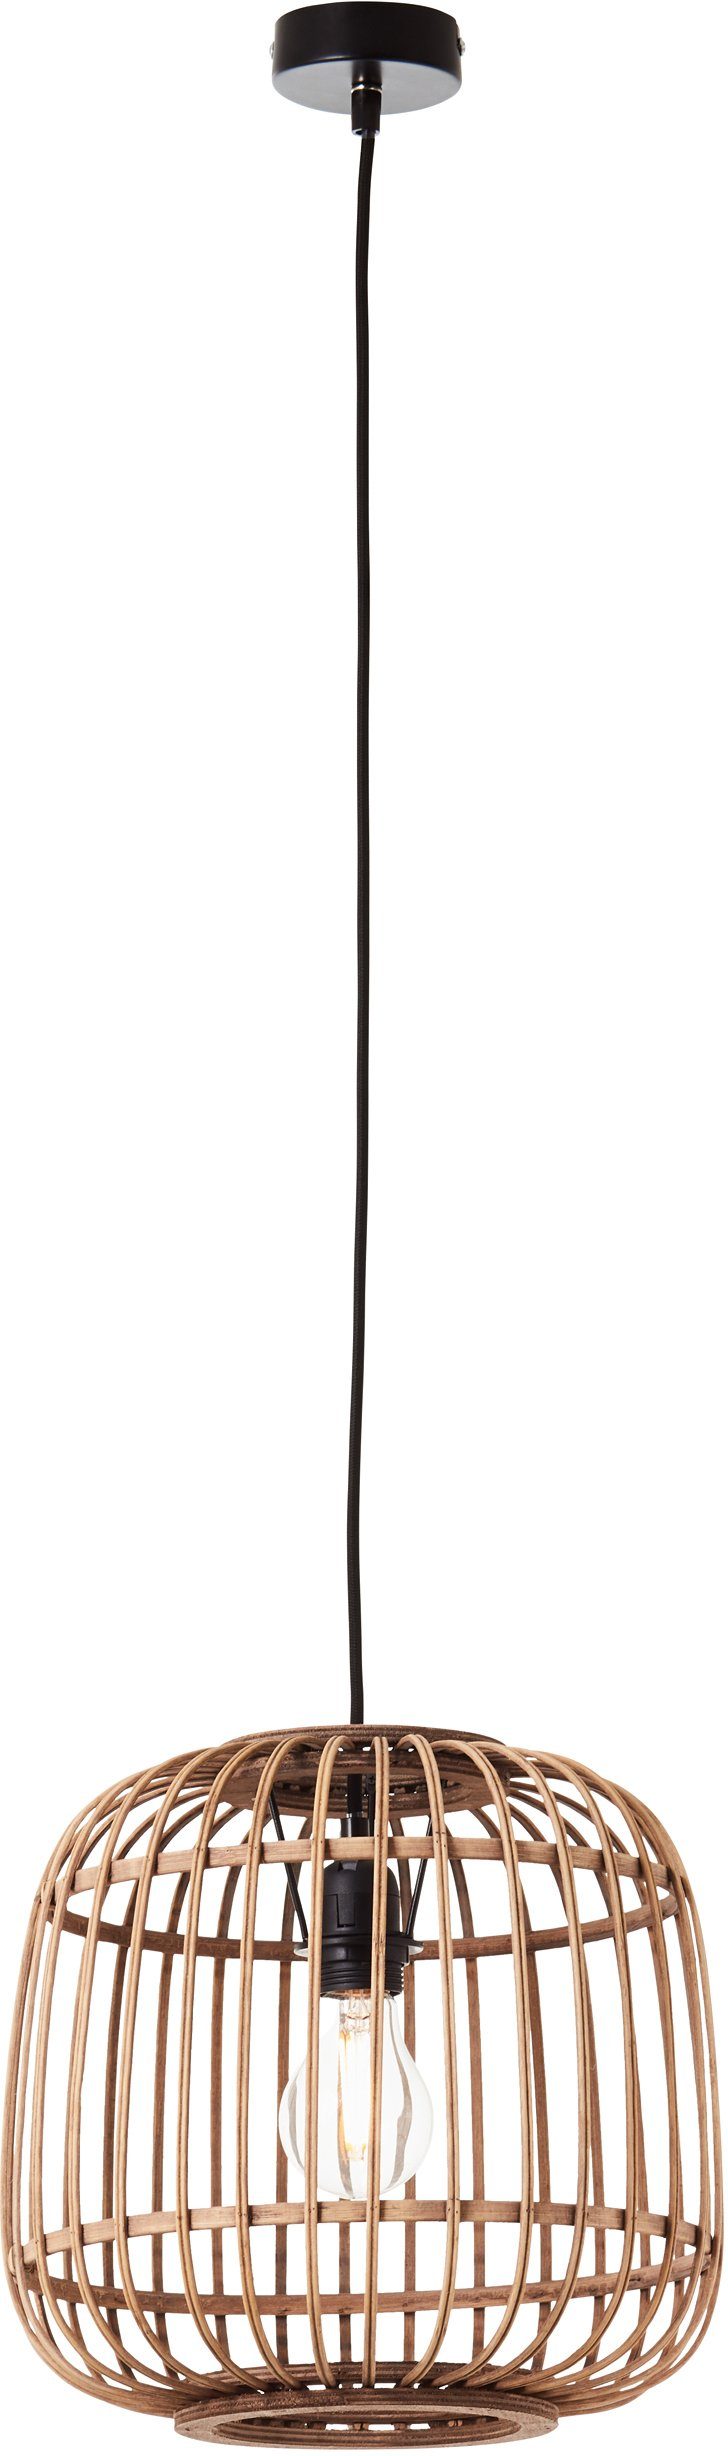 Home affaire Kabel ohne aus Schirm mit Rattan kürzbar Pendelleuchte - Durchmesser, Hängelampe Grazay, 32cm Leuchtmittel